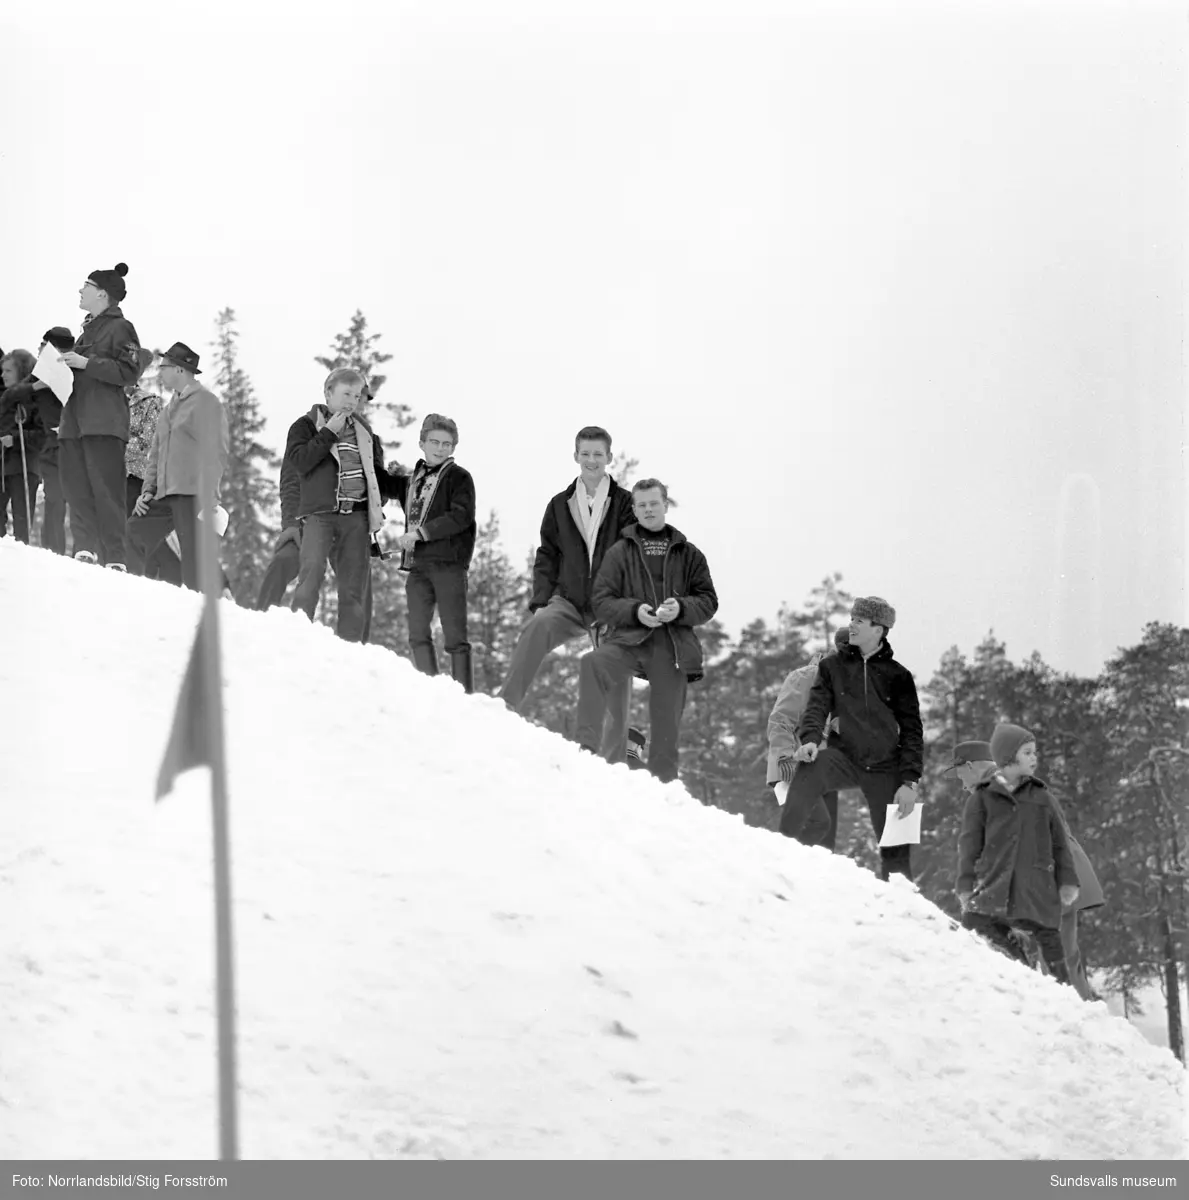 Slalomtävling på Södra berget med norska gutter som gör volter.